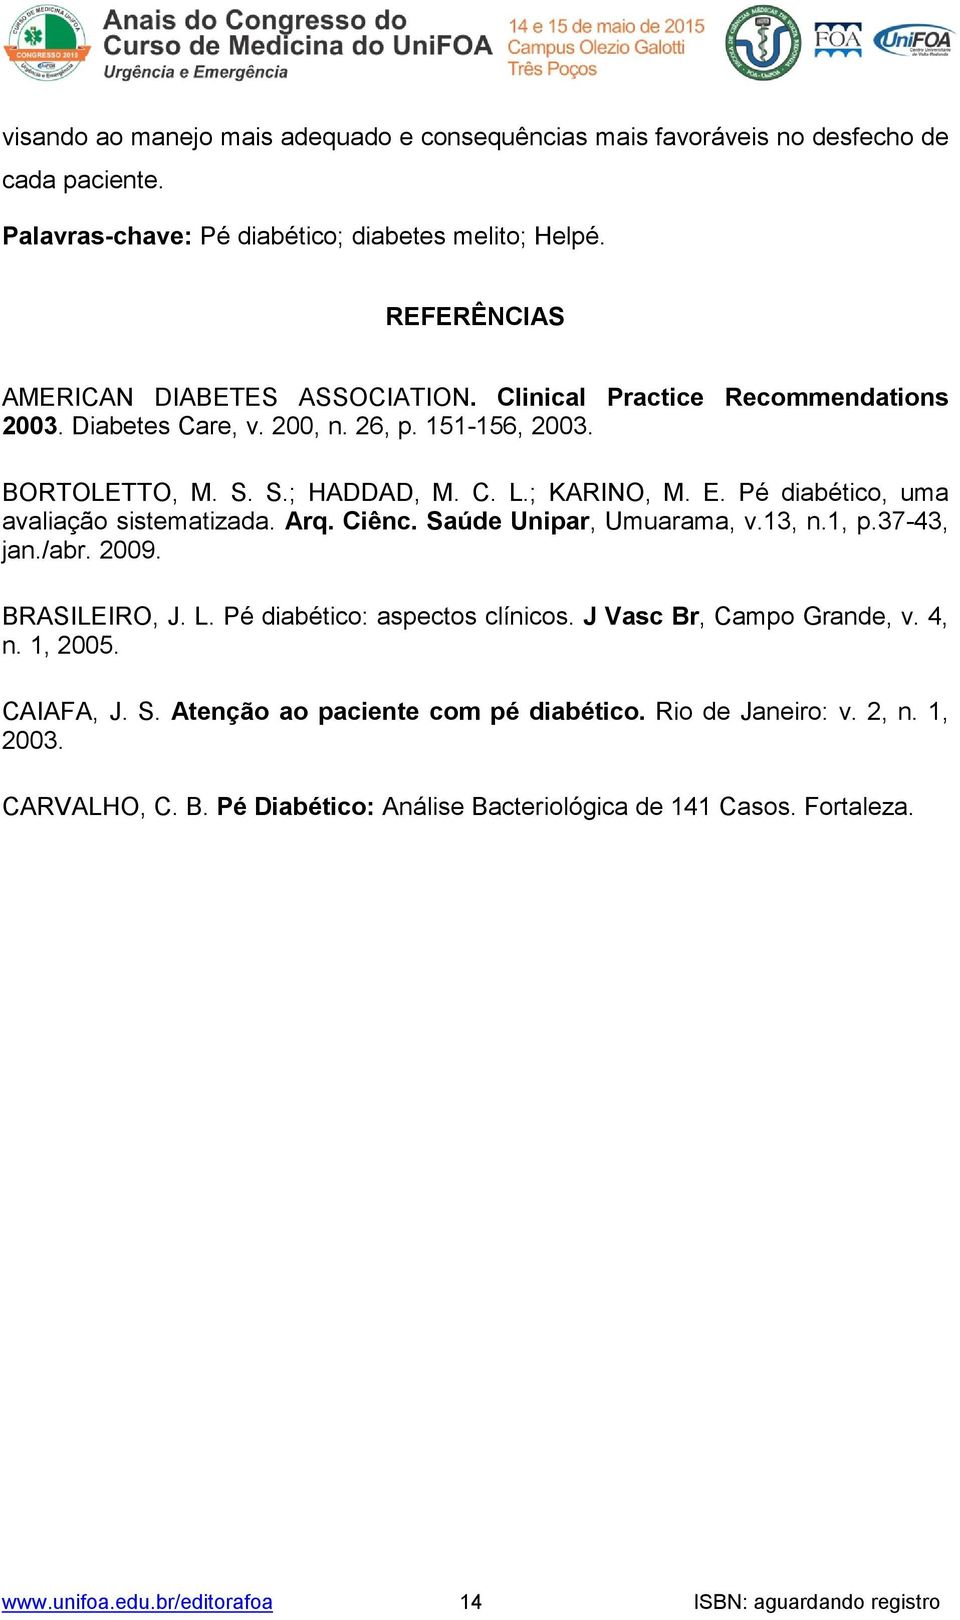 Ciênc. Saúde Unipar, Umuarama, v.13, n.1, p.37-43, jan./abr. 2009. BRASILEIRO, J. L. Pé diabético: aspectos clínicos. J Vasc Br, Campo Grande, v. 4, n. 1, 2005. CAIAFA, J. S. Atenção ao paciente com pé diabético.